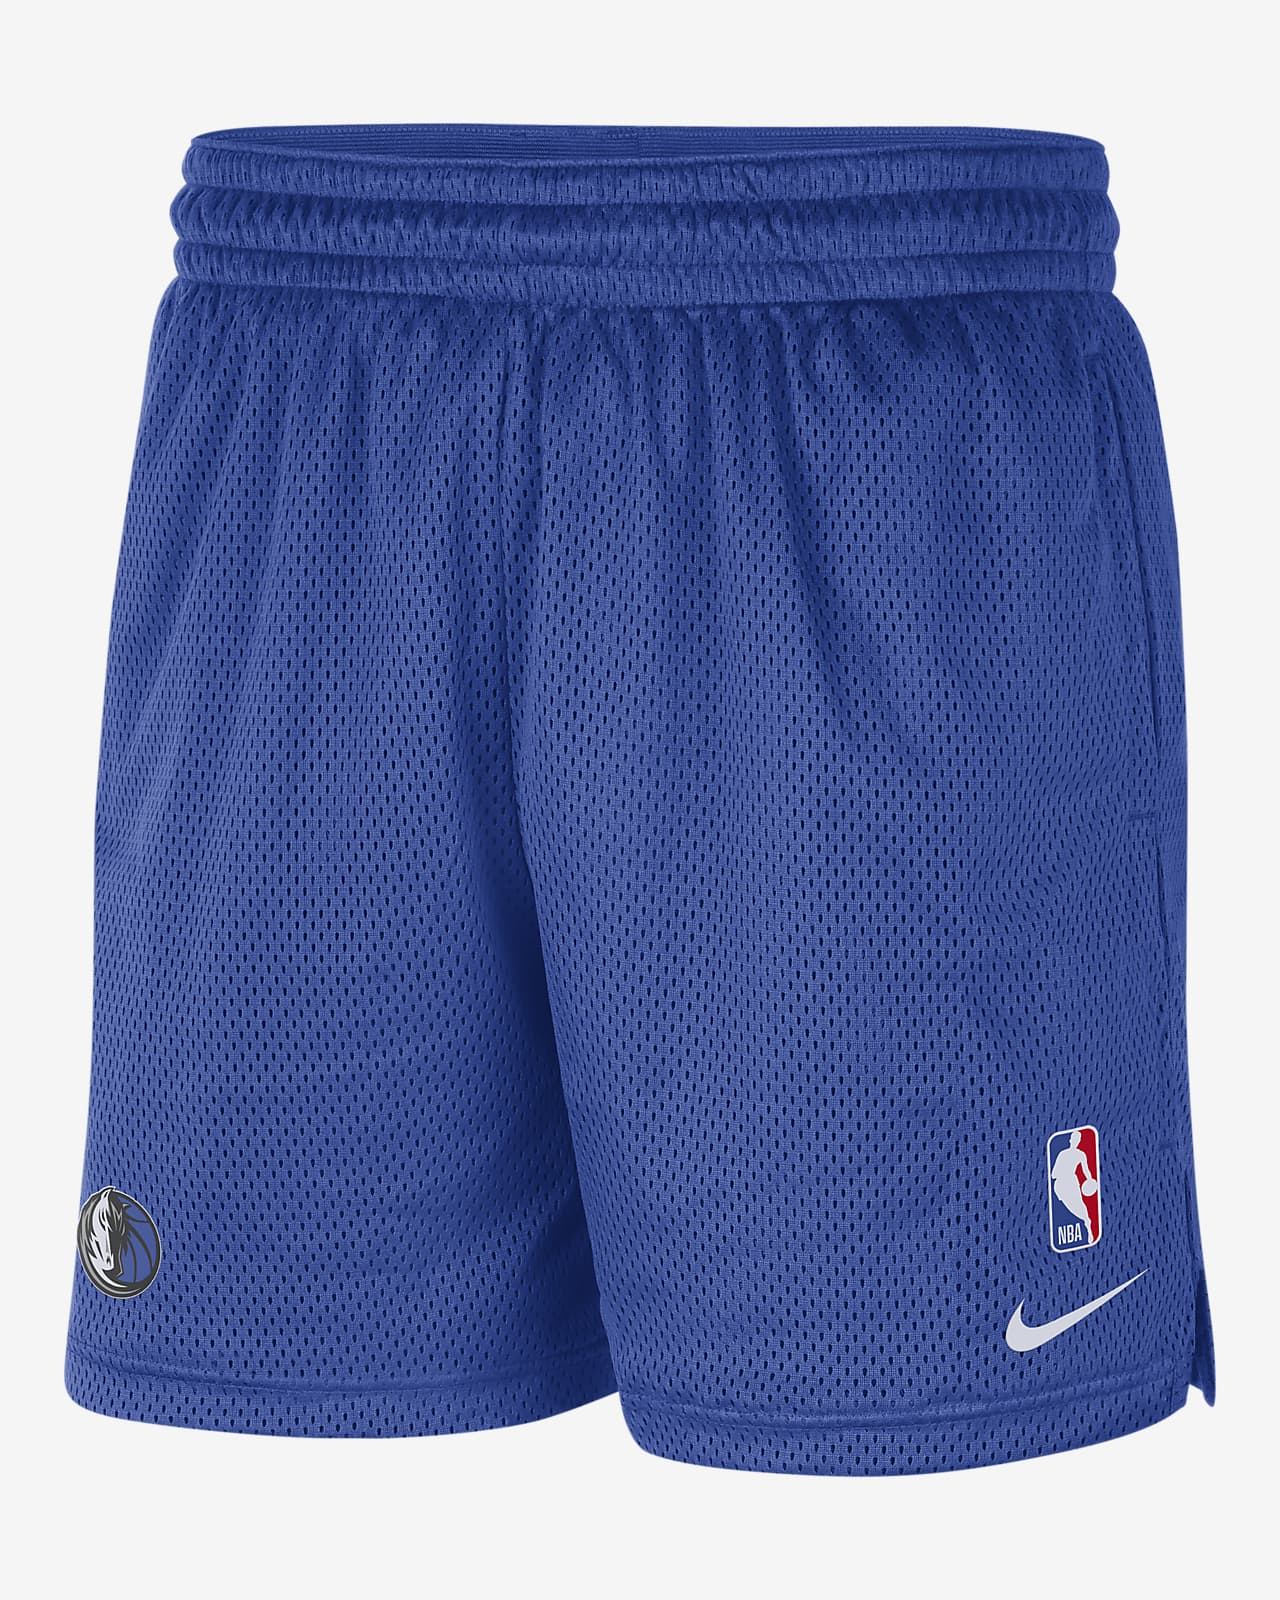 Dallas Mavericks Men's Nike NBA Shorts